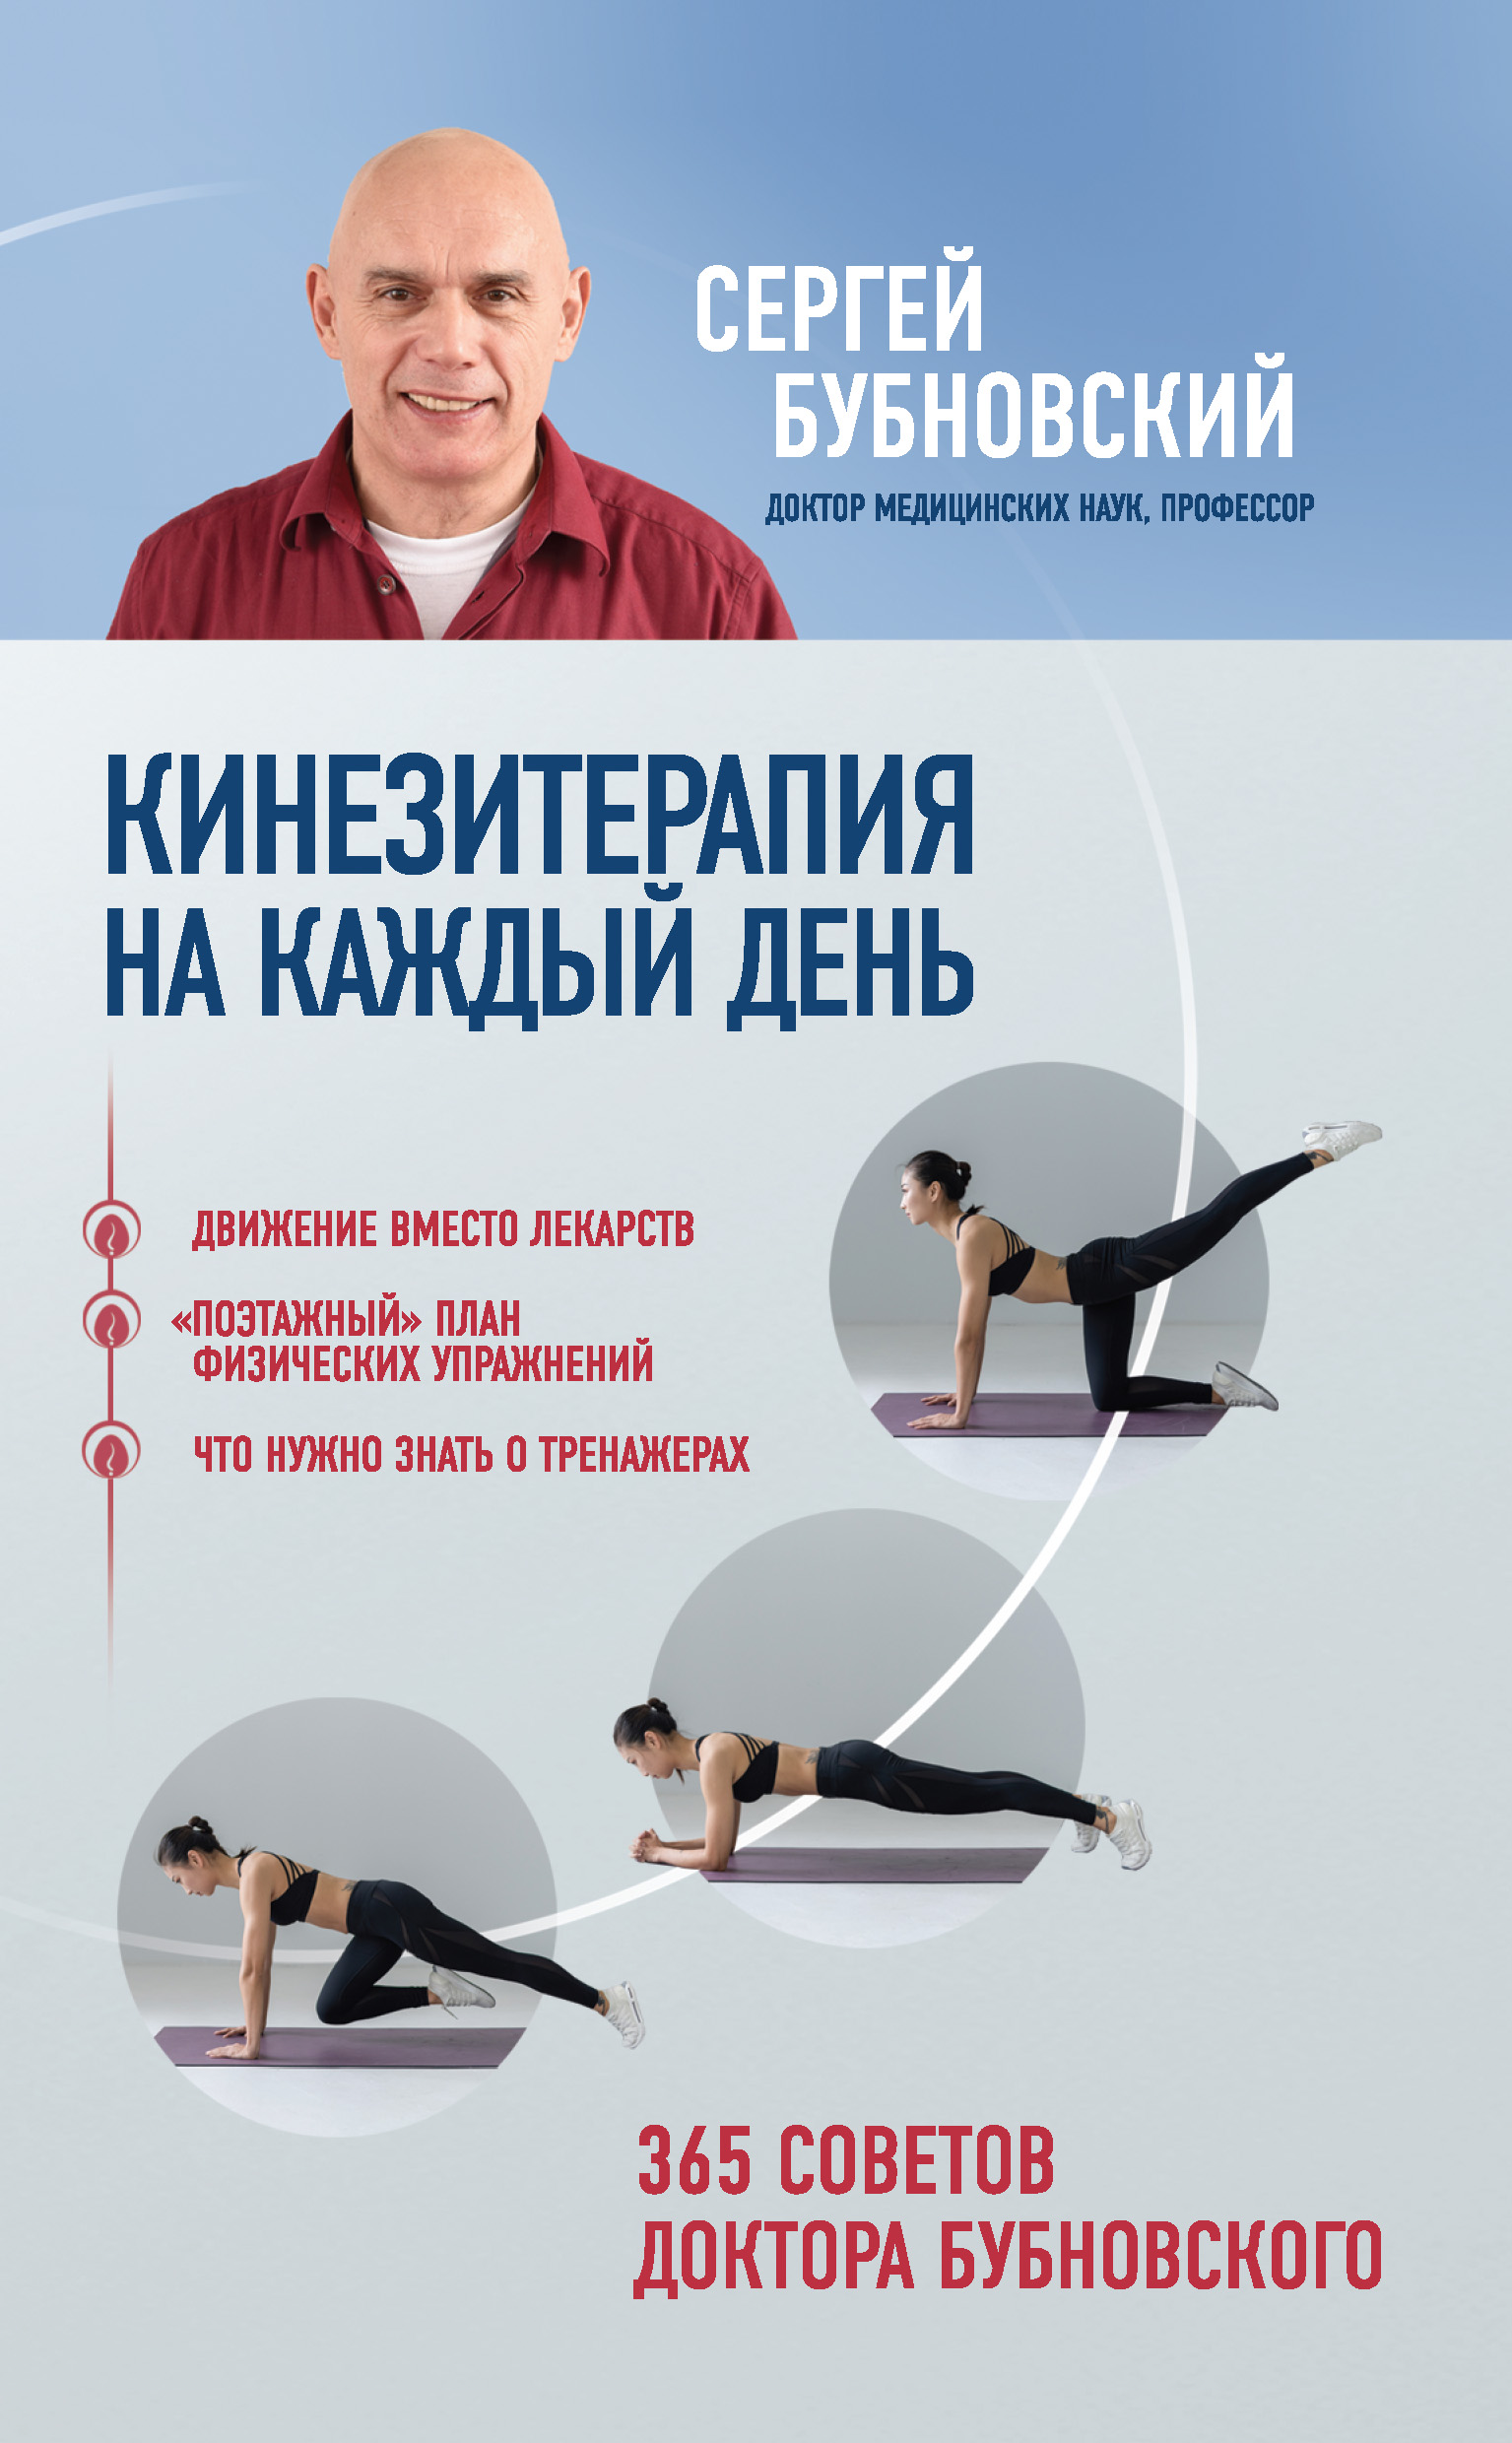 Лечебная гимнастика при боли в спине - Центр доктора Бубновского в Краснодаре